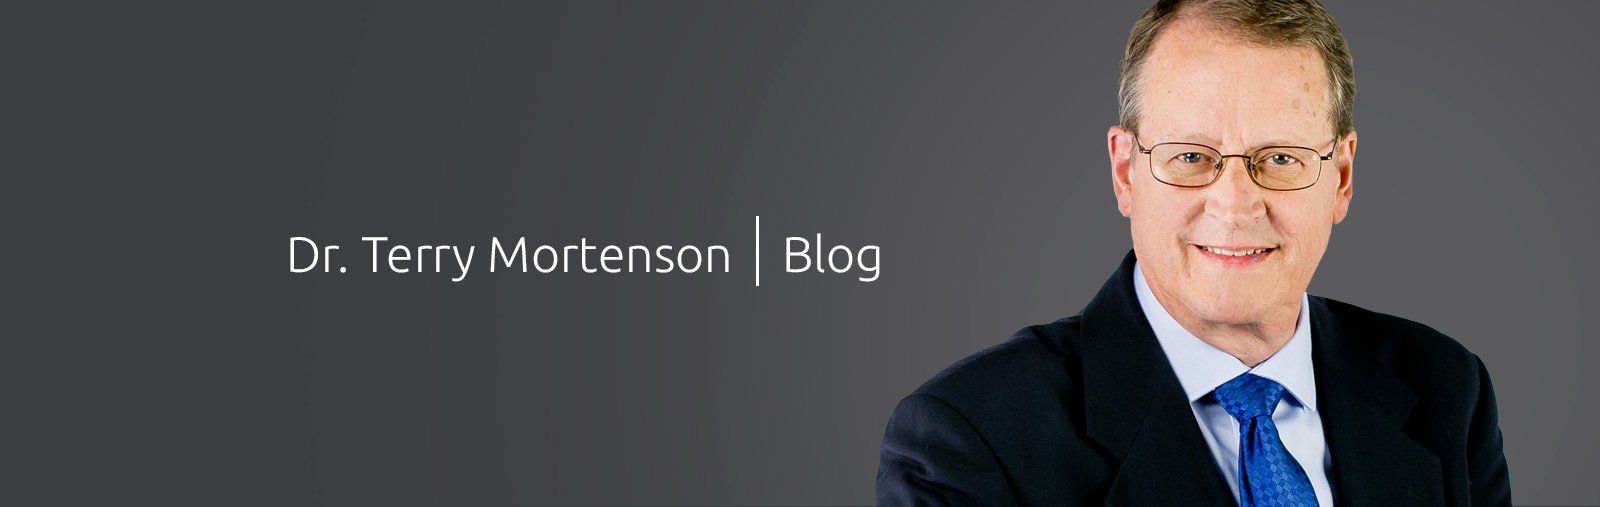 Terry Mortenson Blog